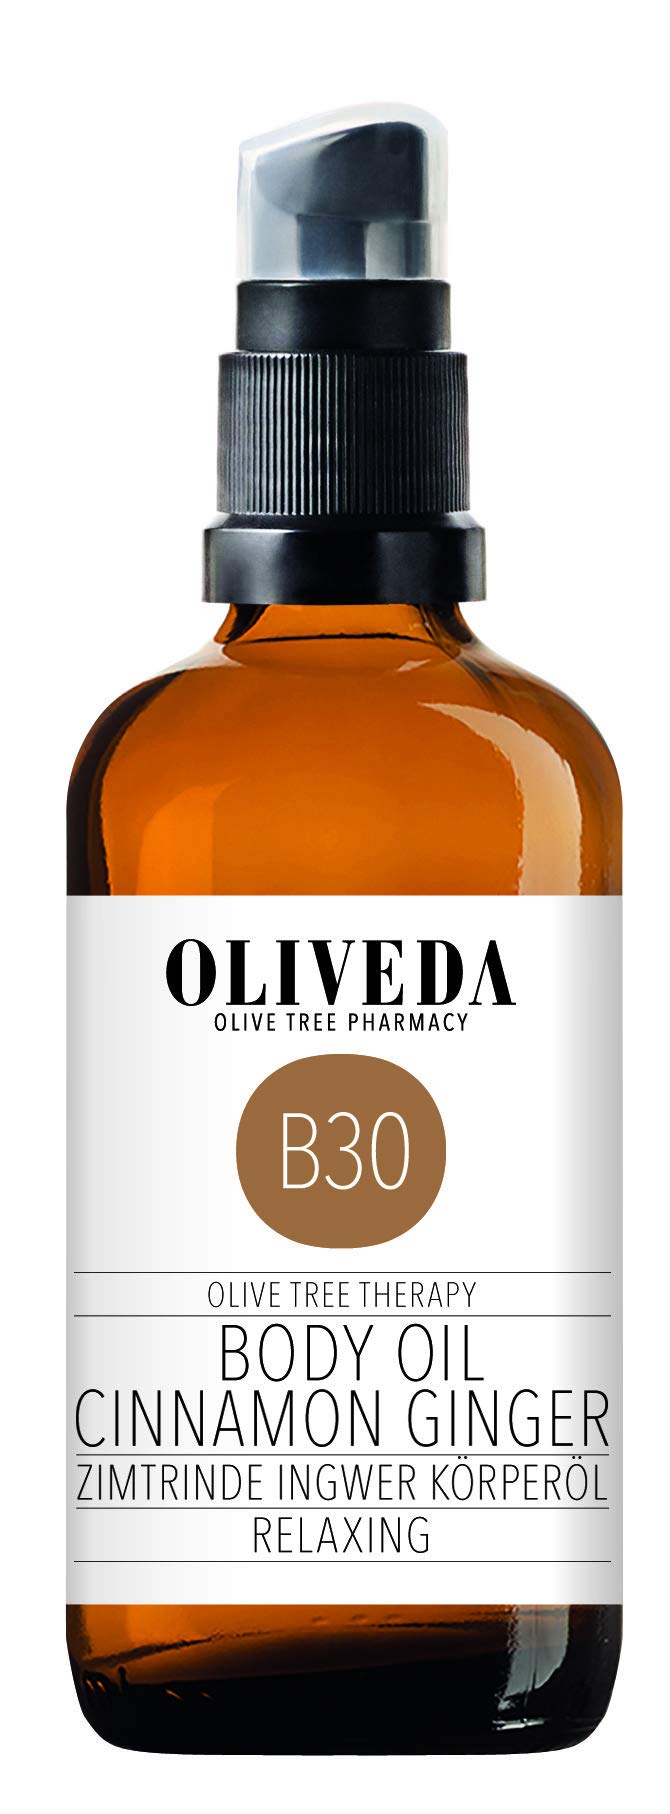 Oliveda B30 - Körperöl Zimtrinde Ingwer | Relaxing | natürliches Pflegeöl | Pflege und Schutz vor Trockener haut | stimulierend & entspannend - 100 ml